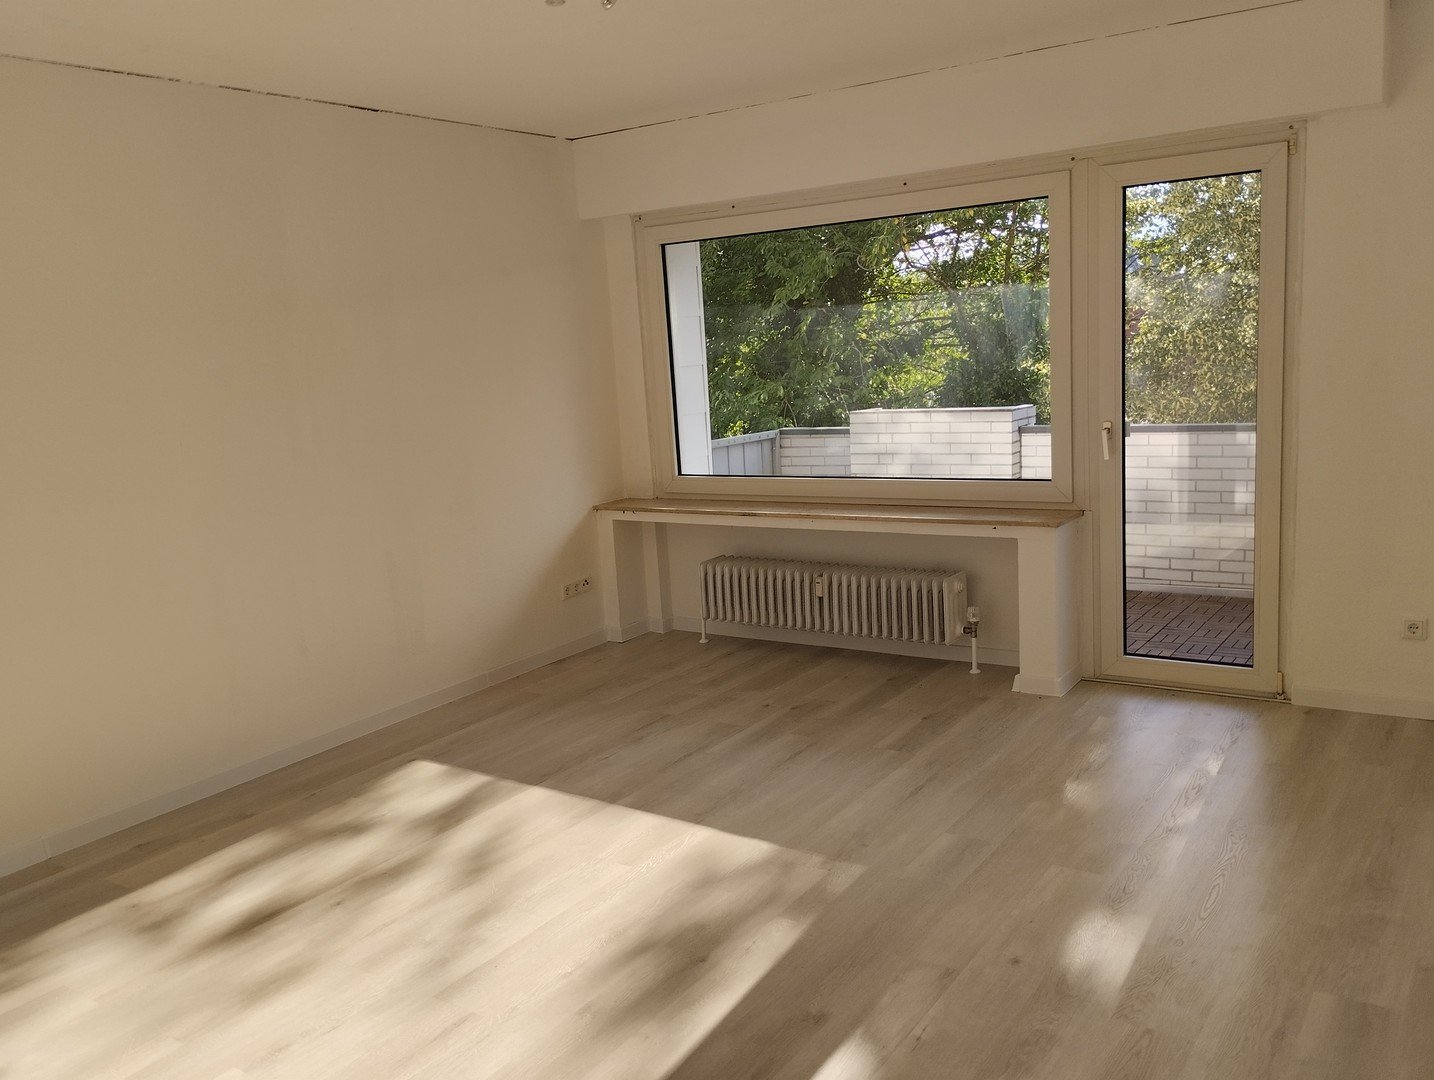 Moderne 3 bis 4 Zimmer Wohnung mit Balkon in ruhiger zentraler Lage